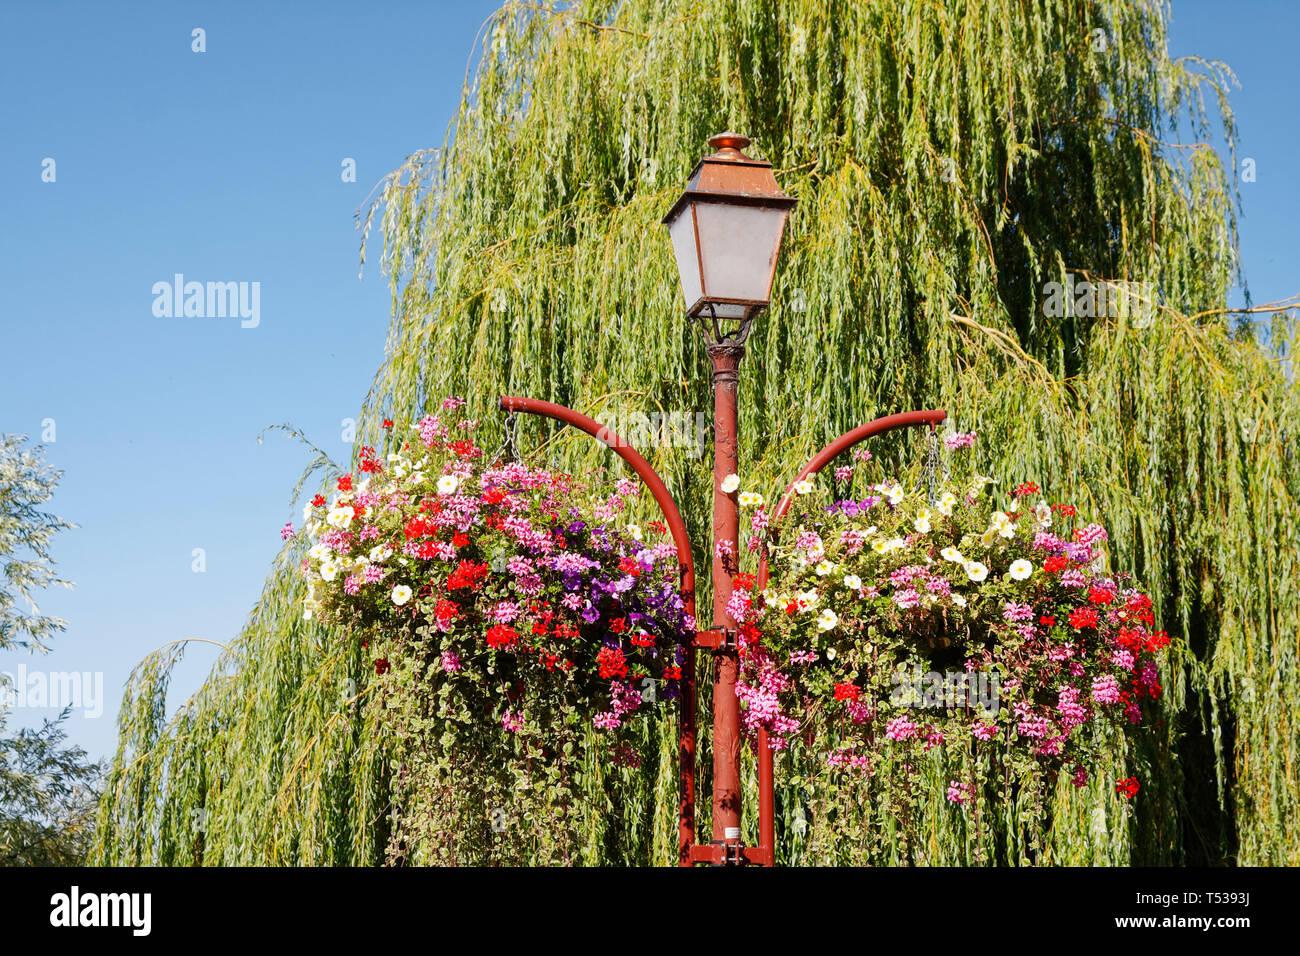 Vieux lampadaire, paniers suspendus, des fleurs colorées, saule pleureur  arbre, Les Andelys ; France ; Normandie ; été, horizontal Photo Stock -  Alamy